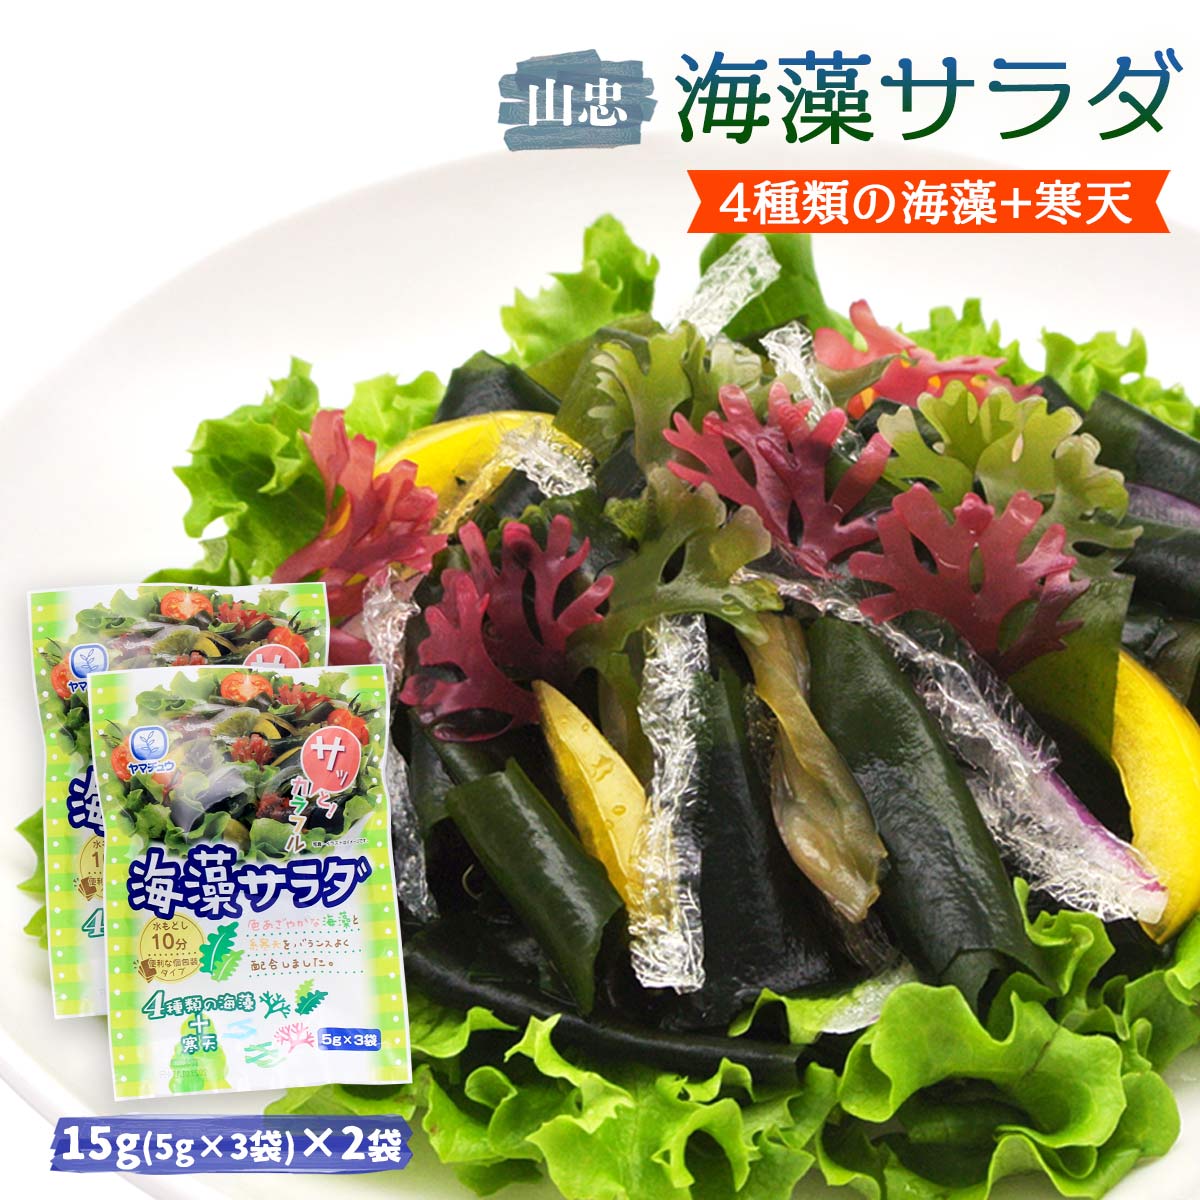 【スーパーセール価格】[山忠] 海藻サラダ 15g(5g×3袋...